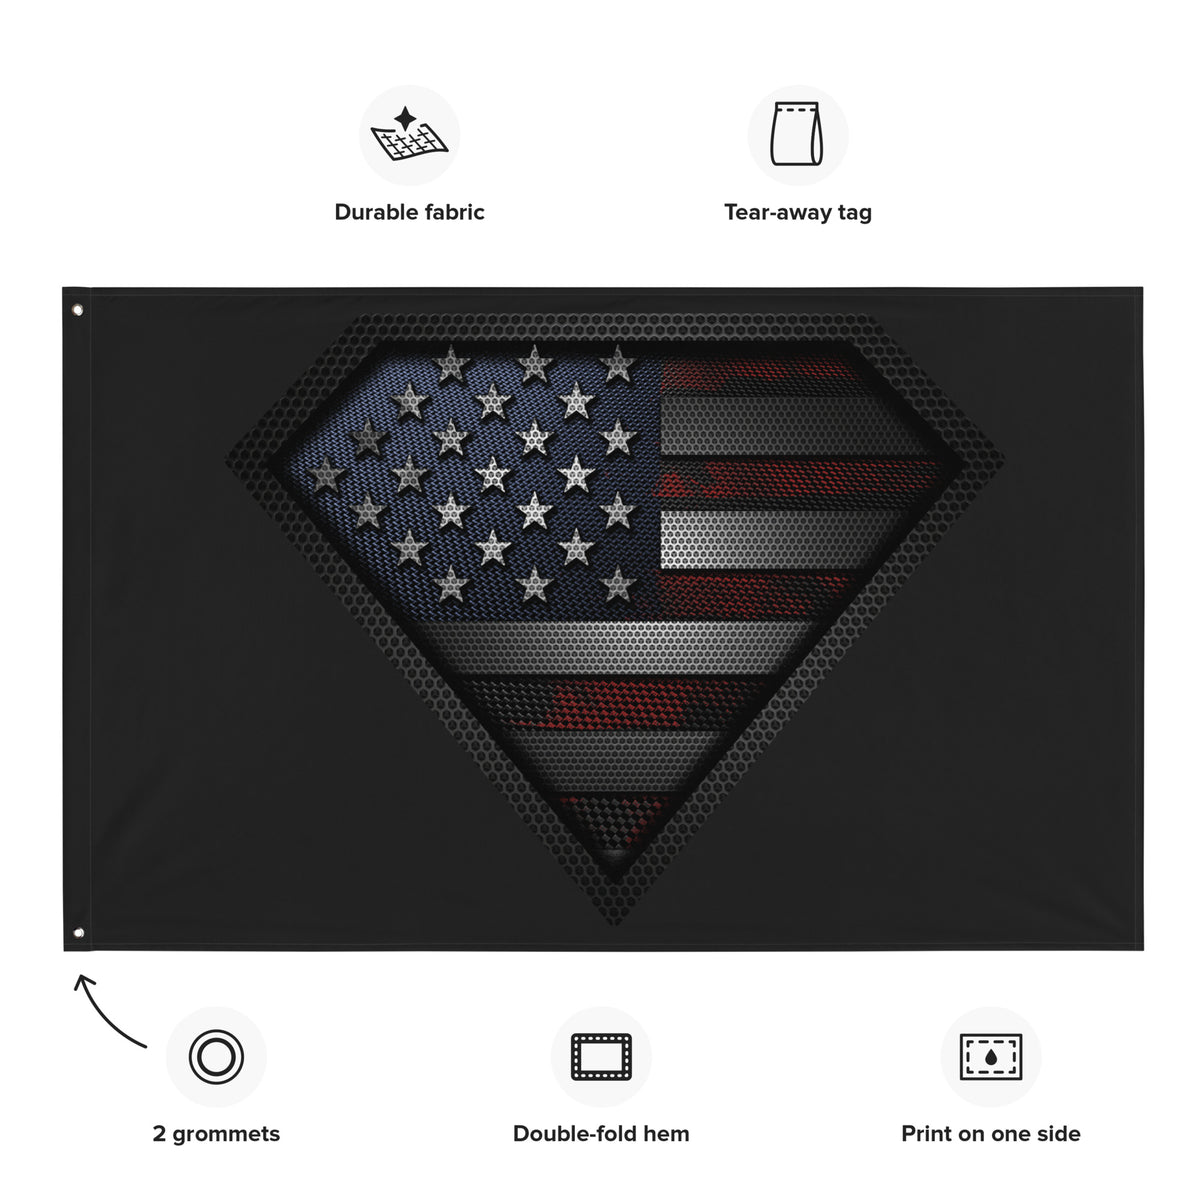 Super Patriot Carbon Color Onyx Wall Flag